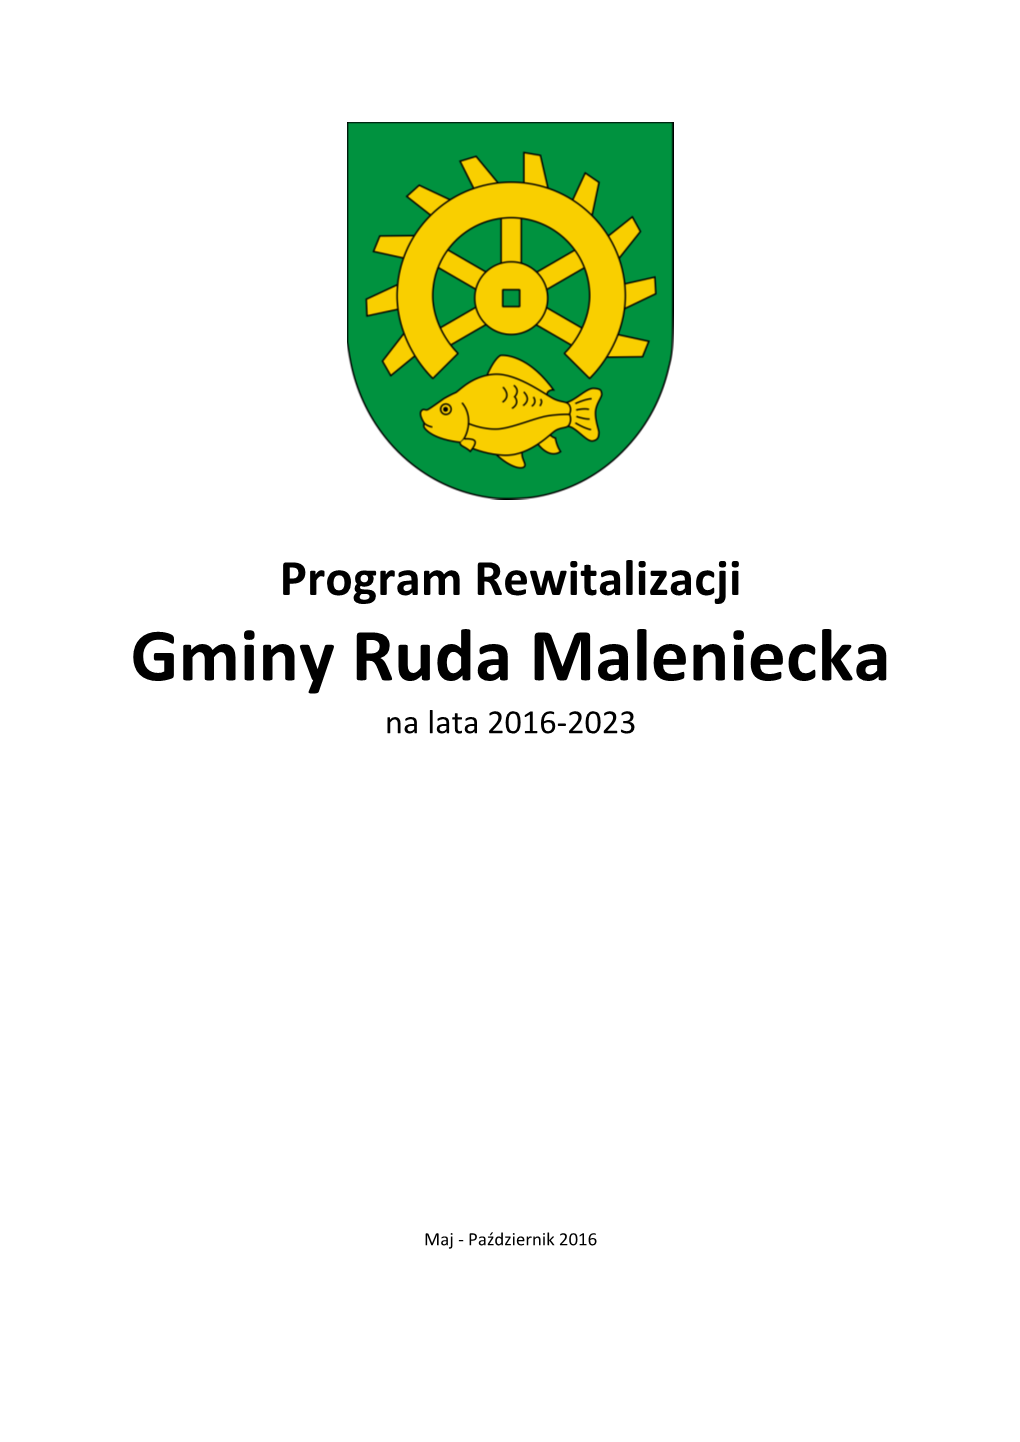 Programem Rewitalizacji Gminy Ruda Maleniecka Na Lata 2016-2023